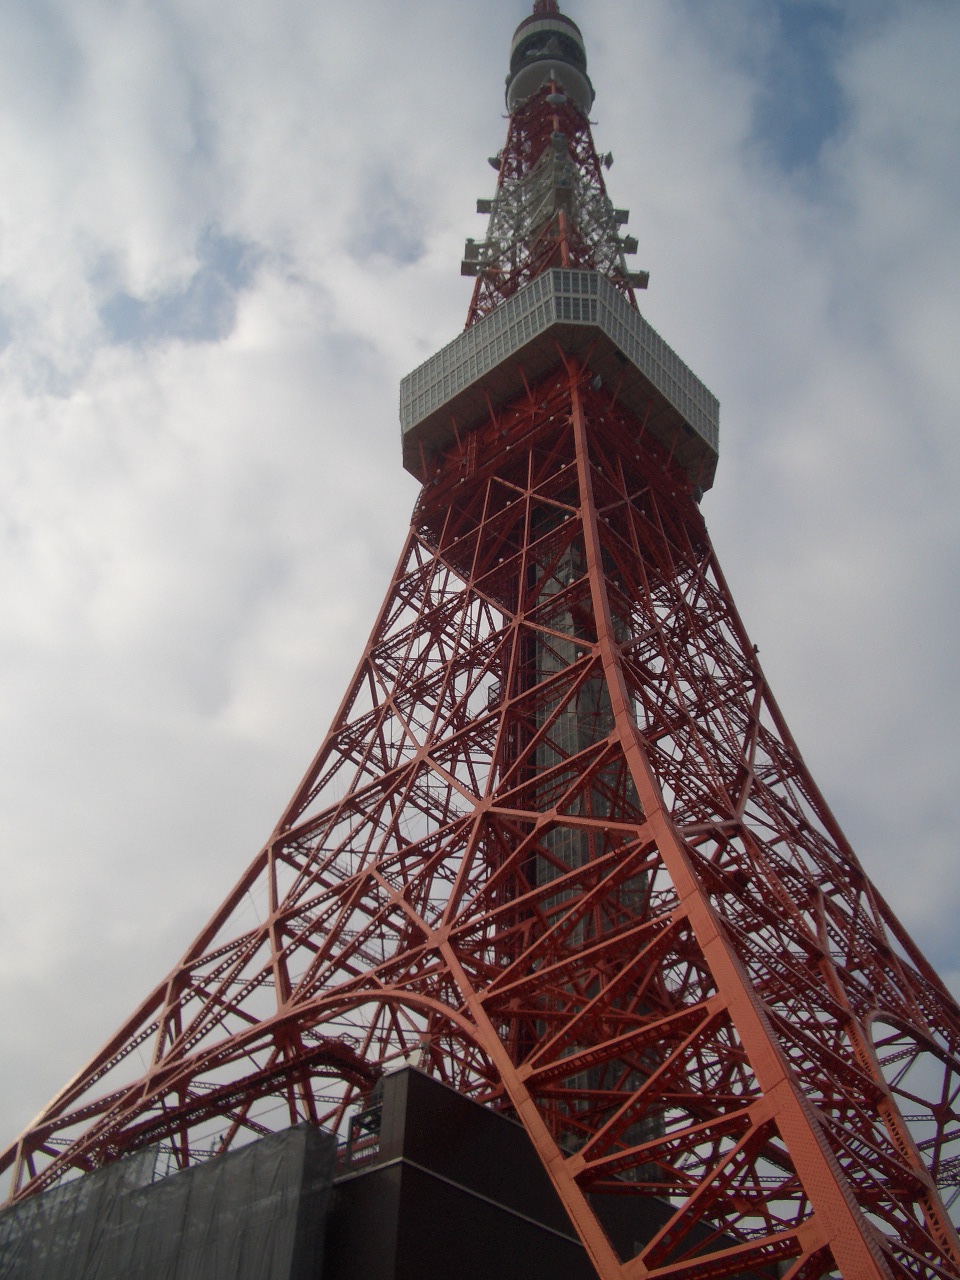 東京タワー.JPG